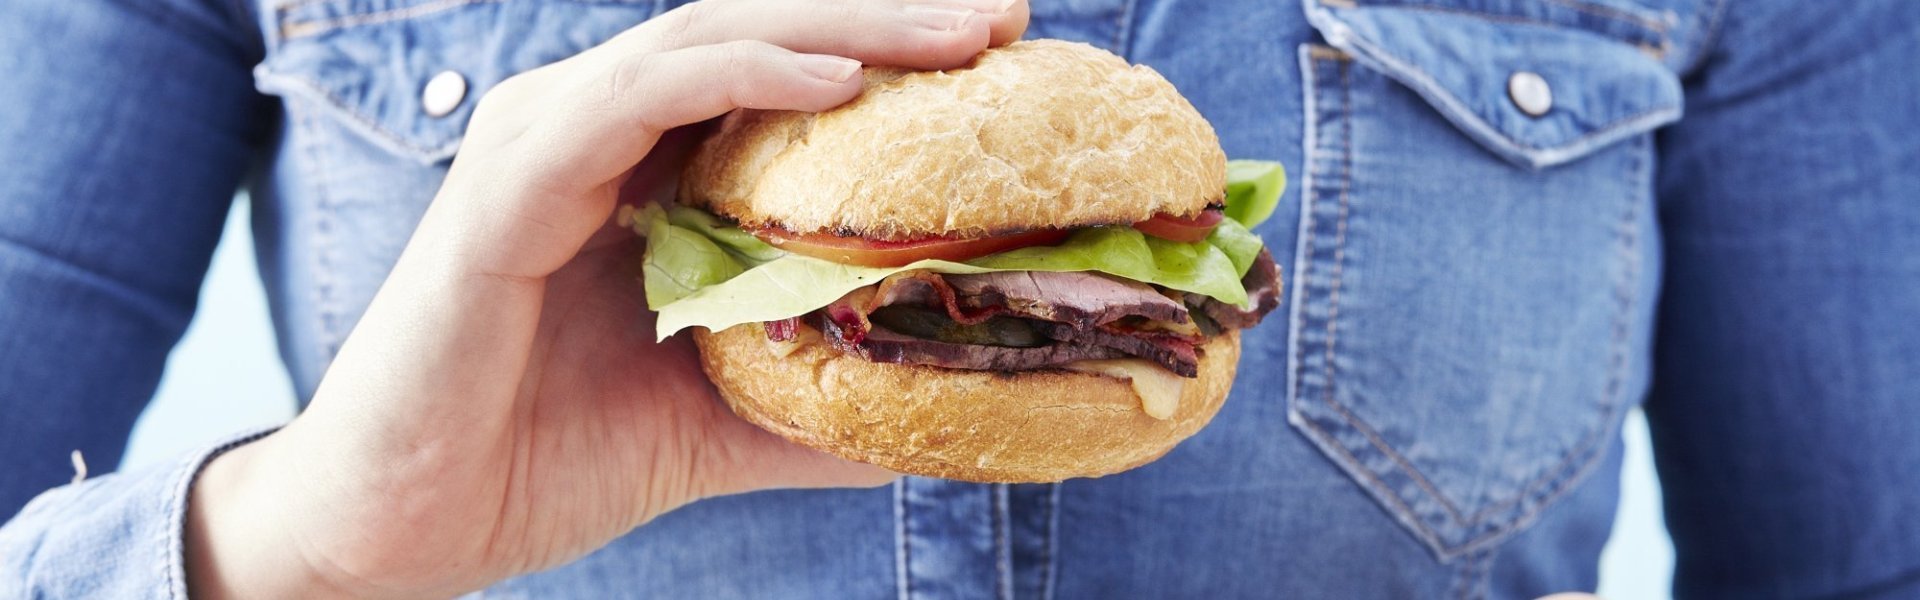 Airco Neerduwen Faial Hoe maak je de ideale hamburger? | Lekker van bij ons